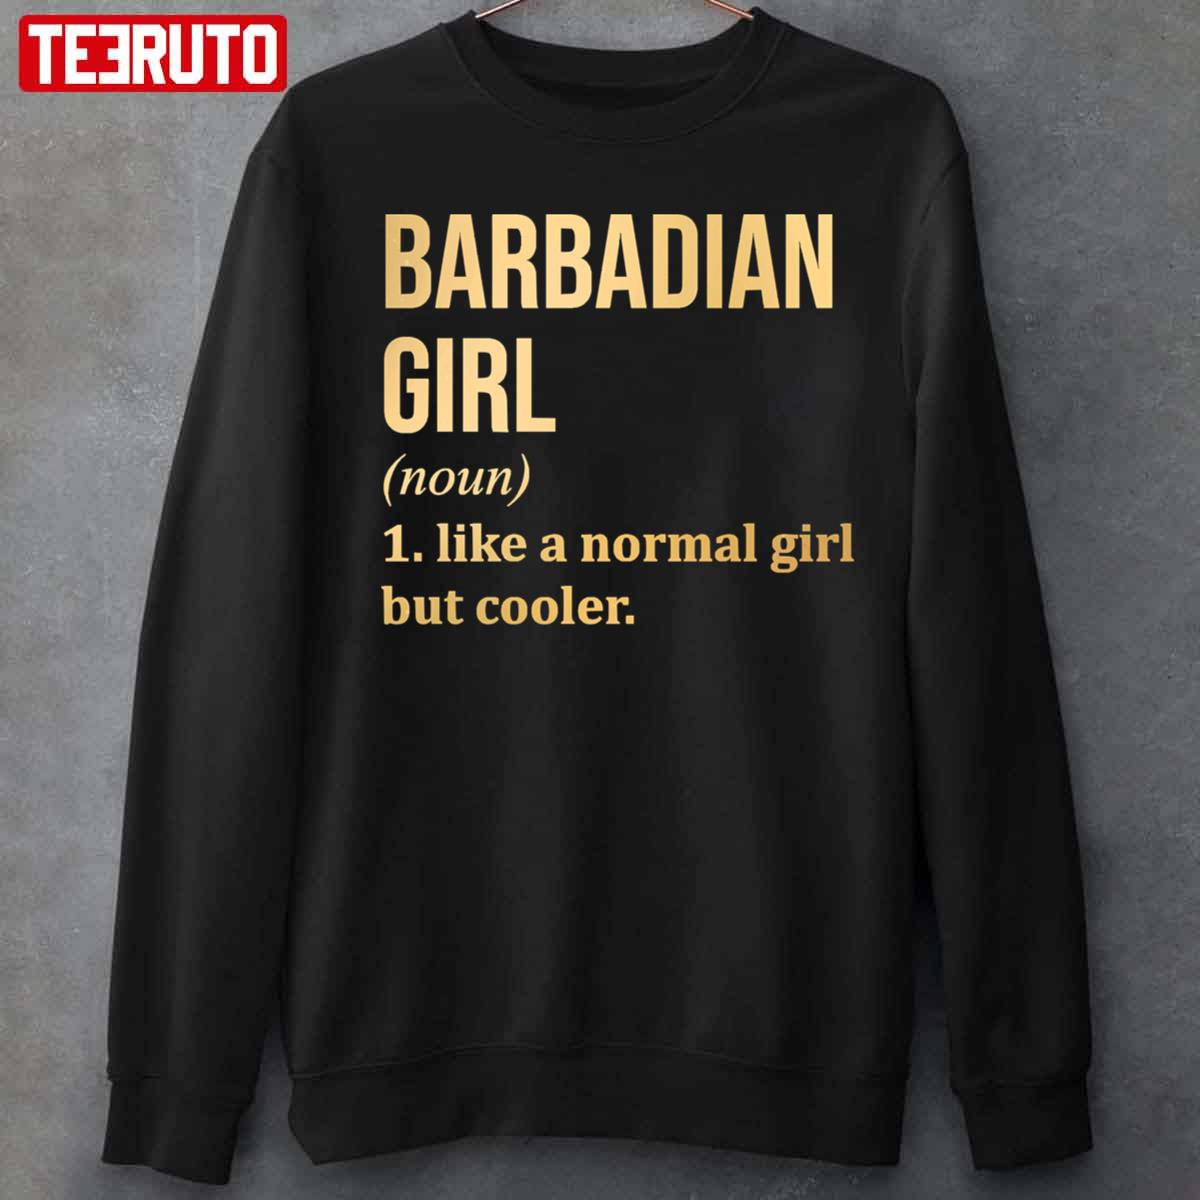 Barbadian Girl Funny Saying Unisex Sweatshirt